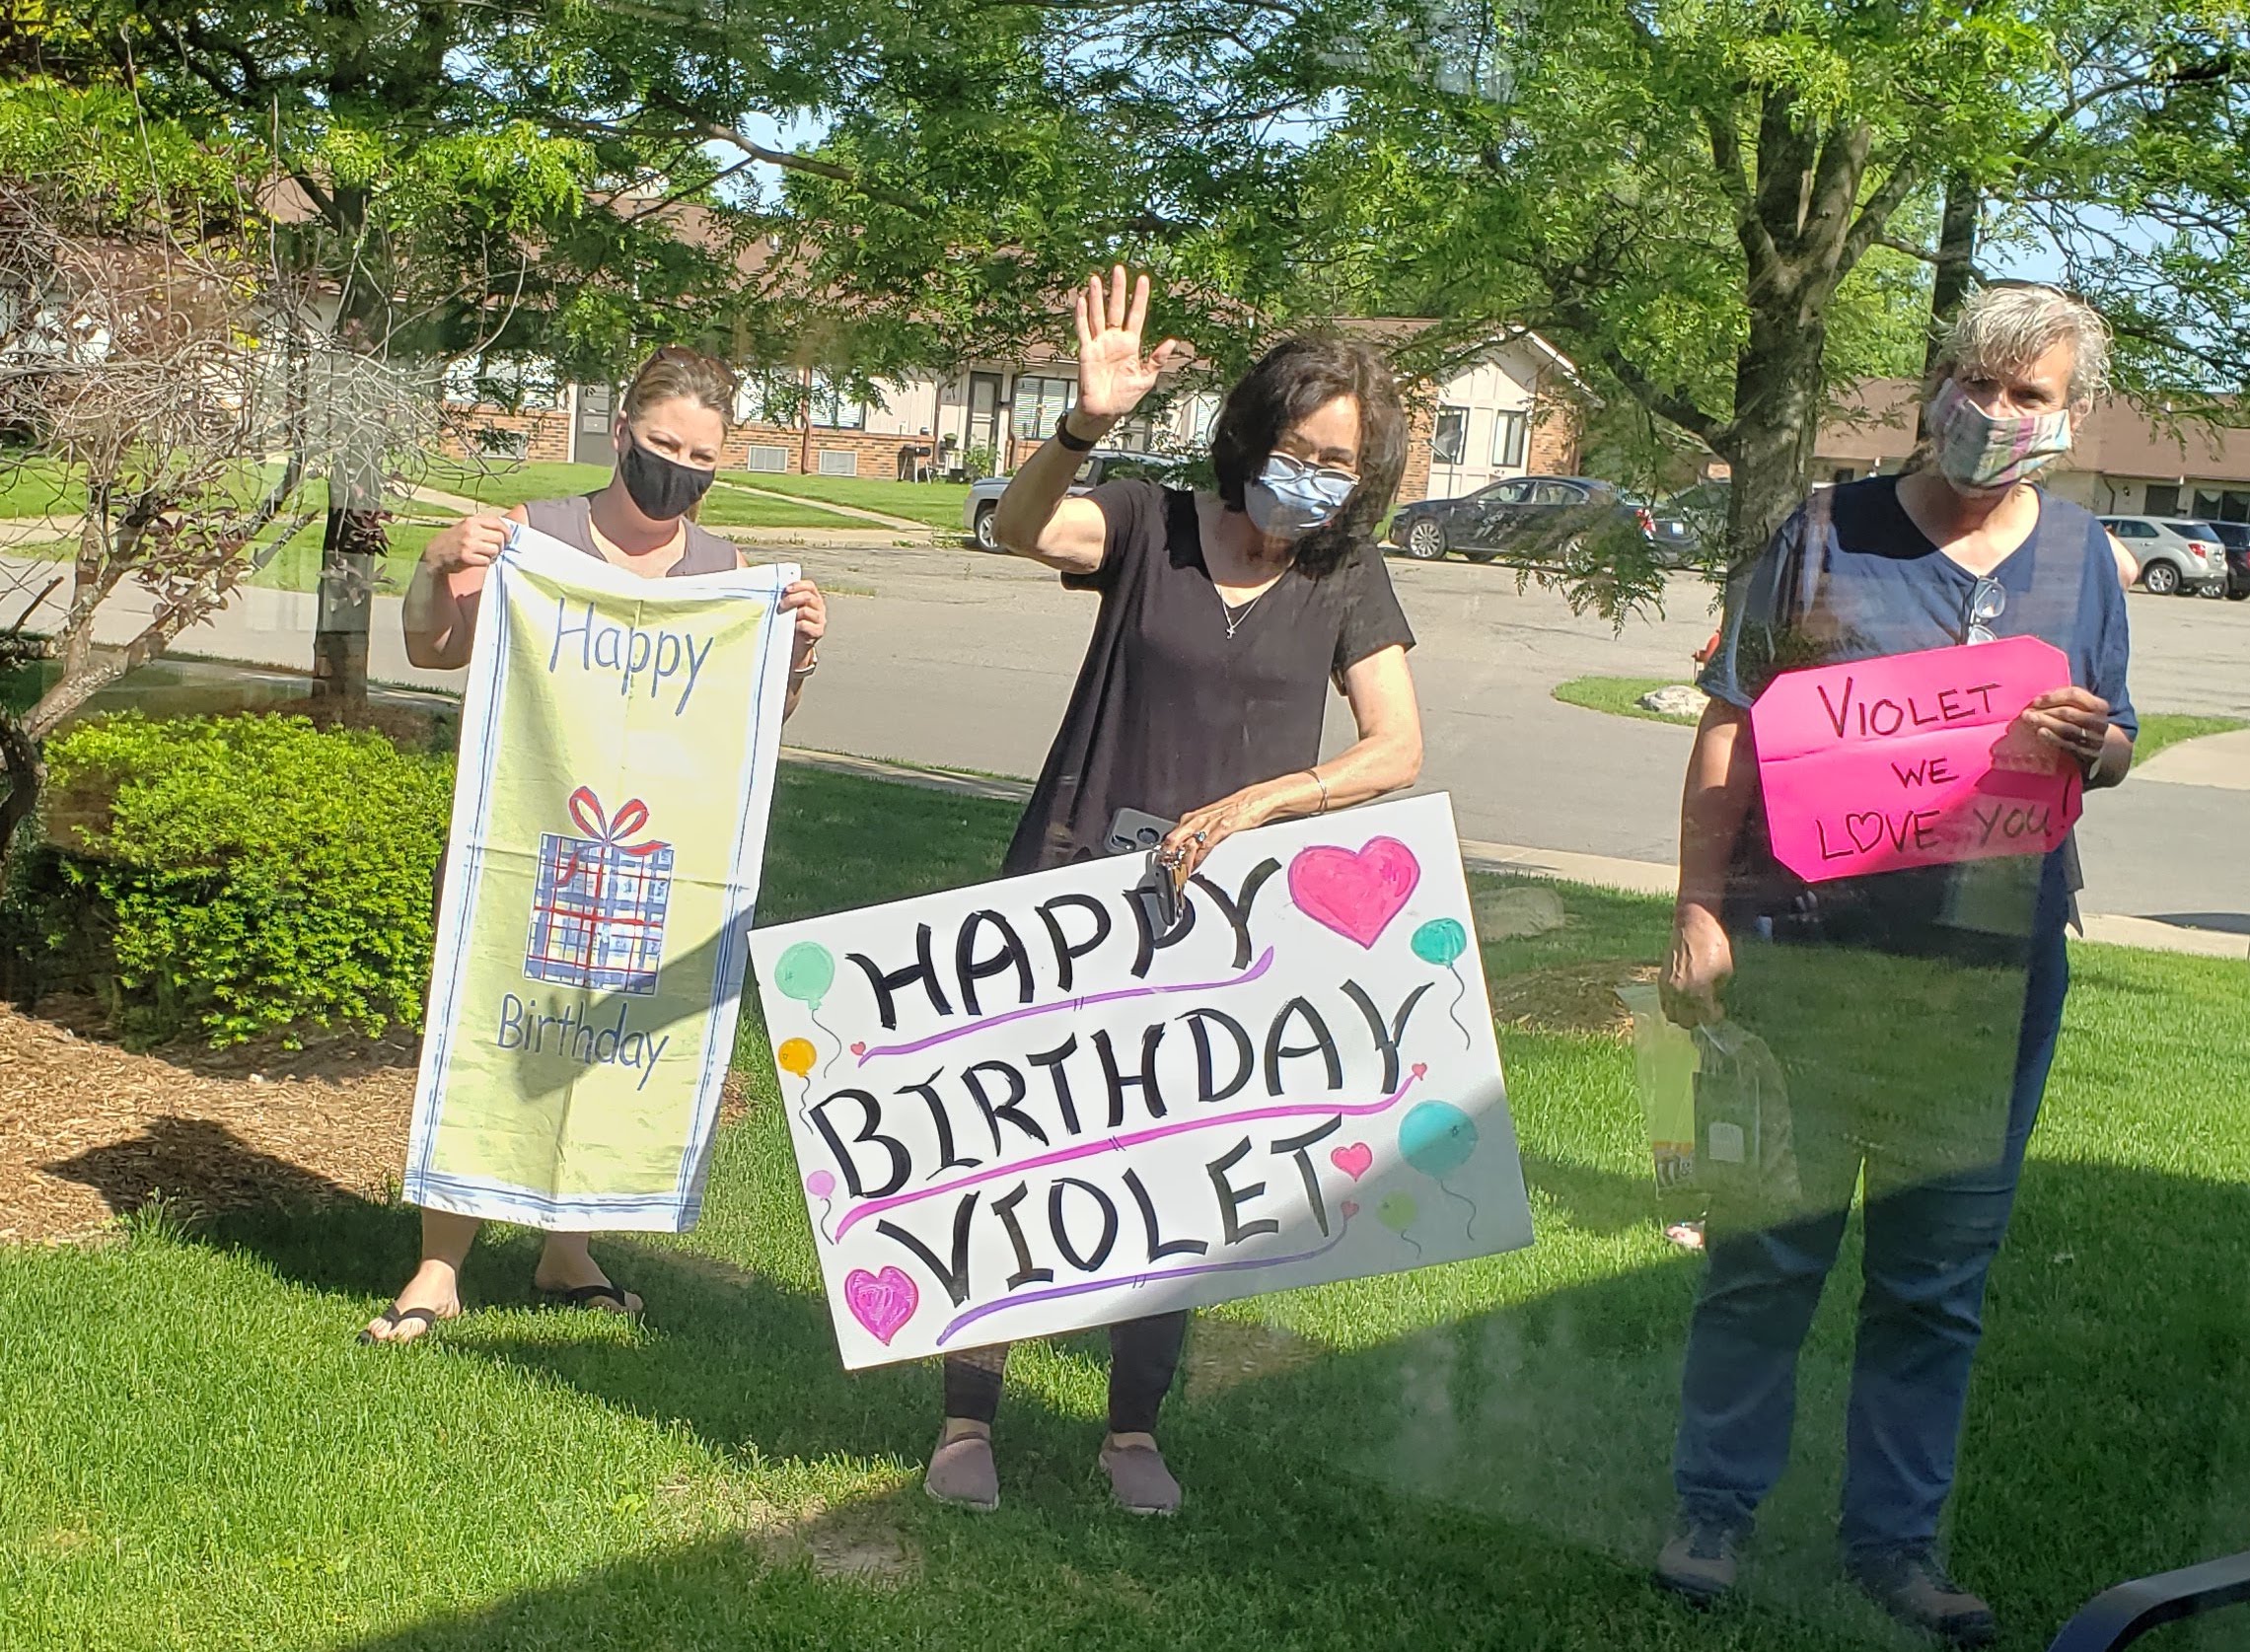 Violet’s Birthday Celebration!